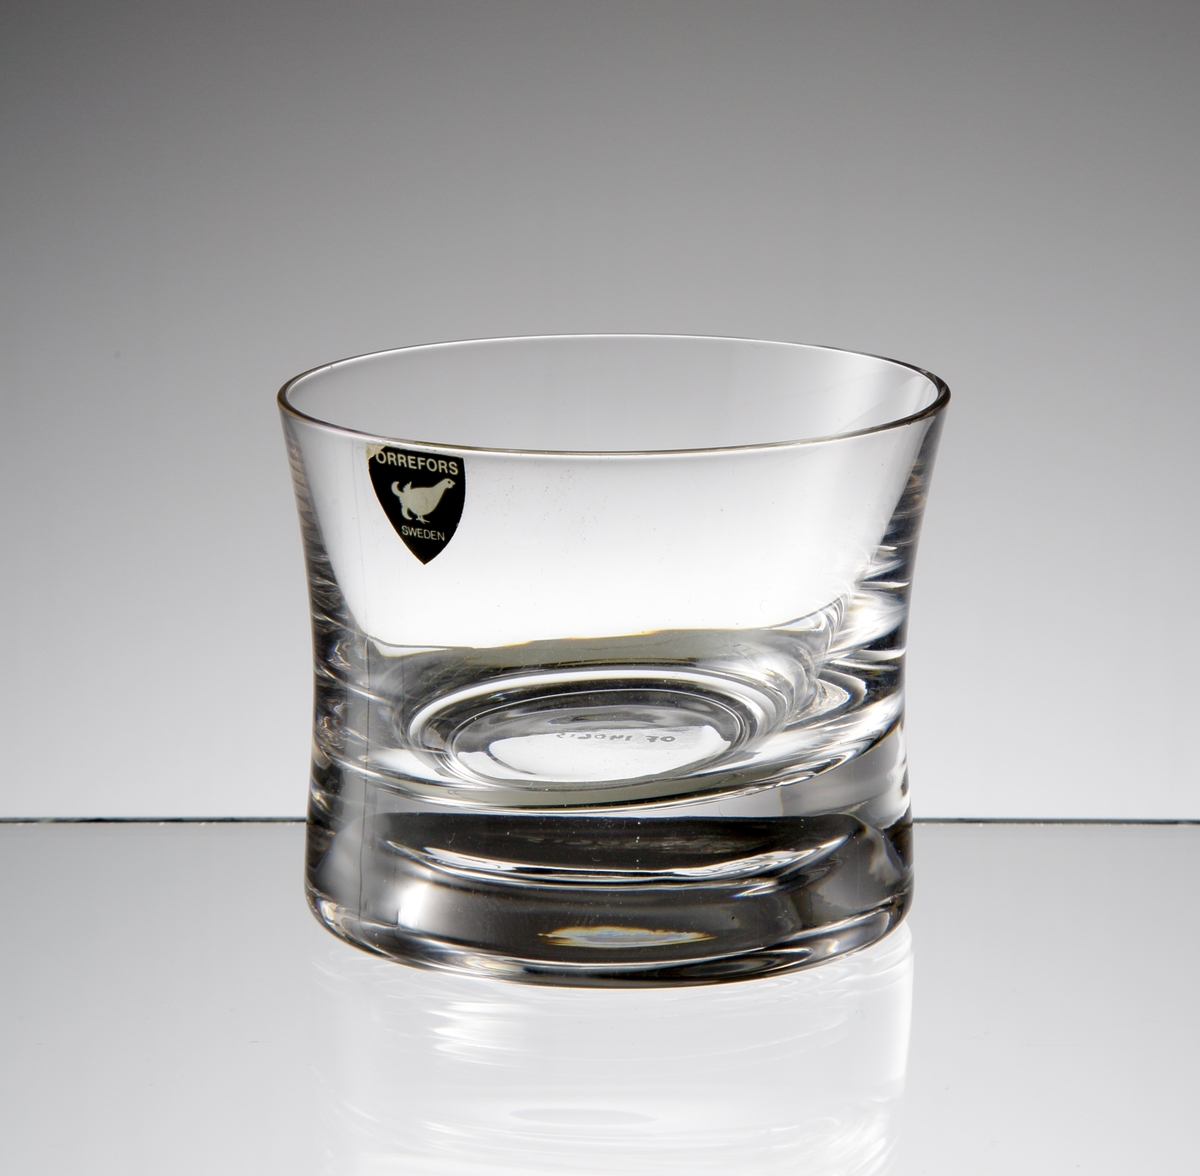 Formgivare: Nils Landberg.
Cocktailglas. Konkav, tjock i botten.
Grå etikett.

Detta exemplar tillverkat under 1990-talet.
